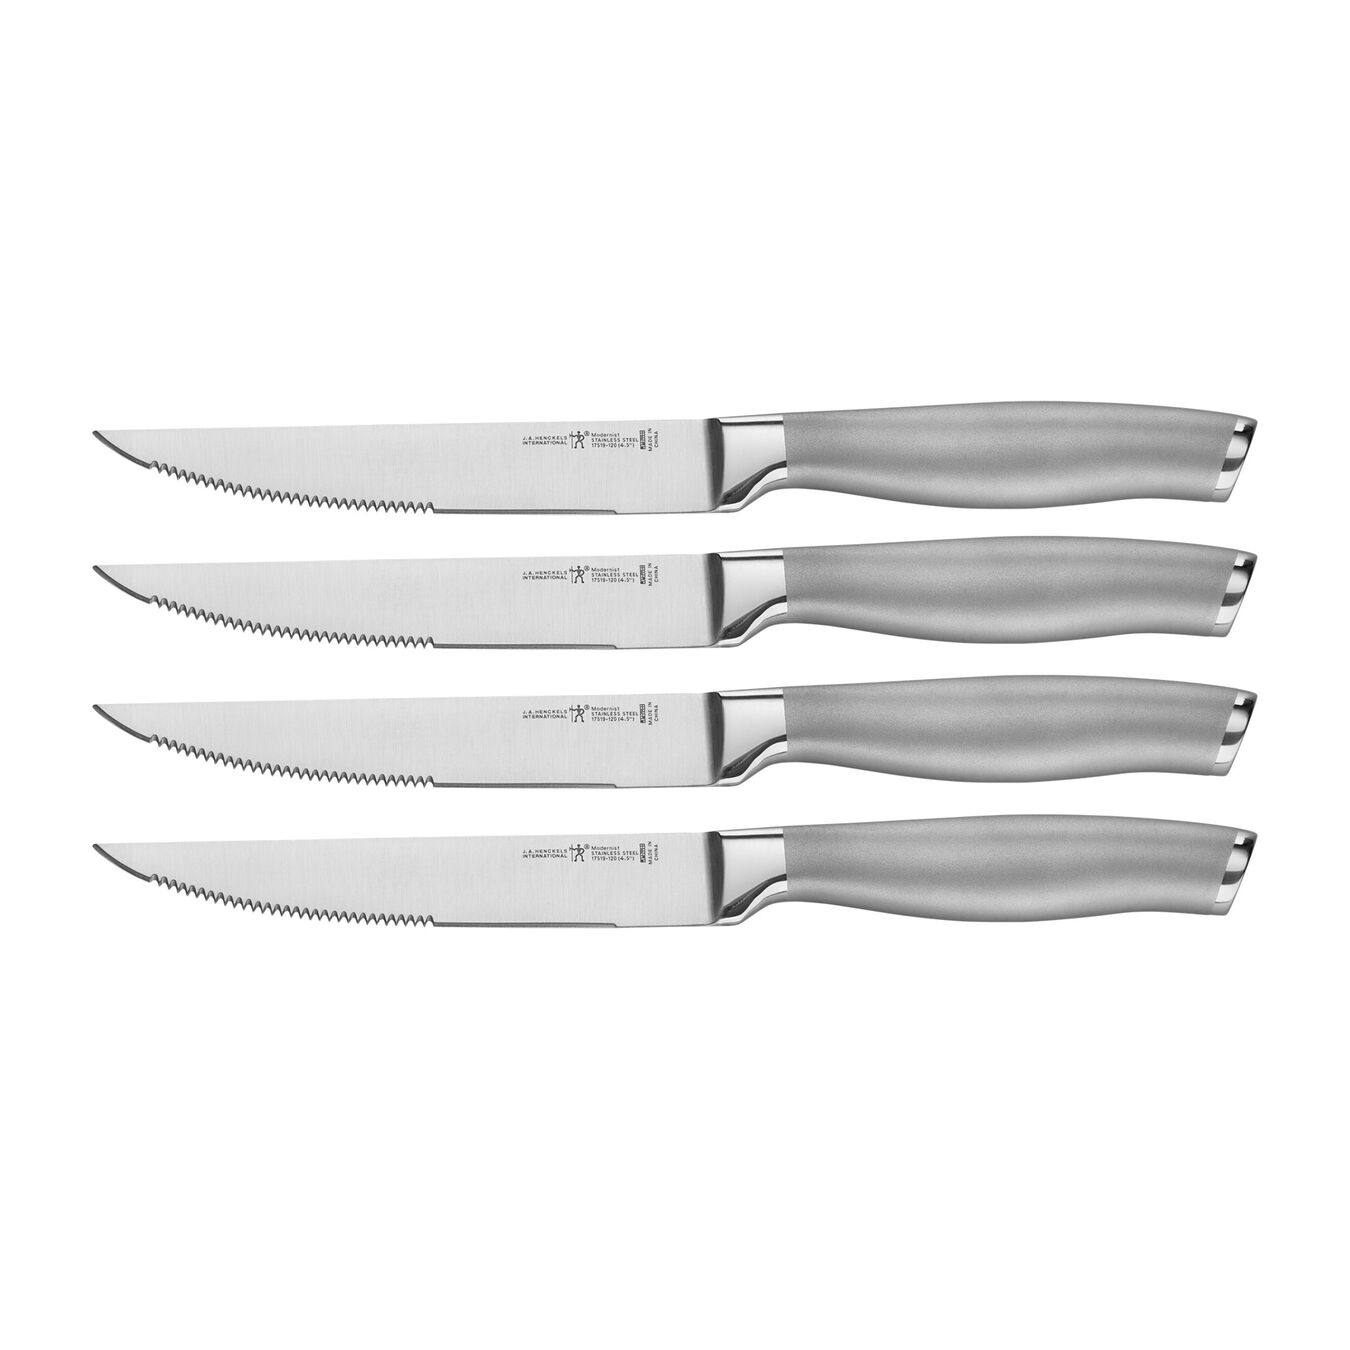 henckels stainless steel steak knives